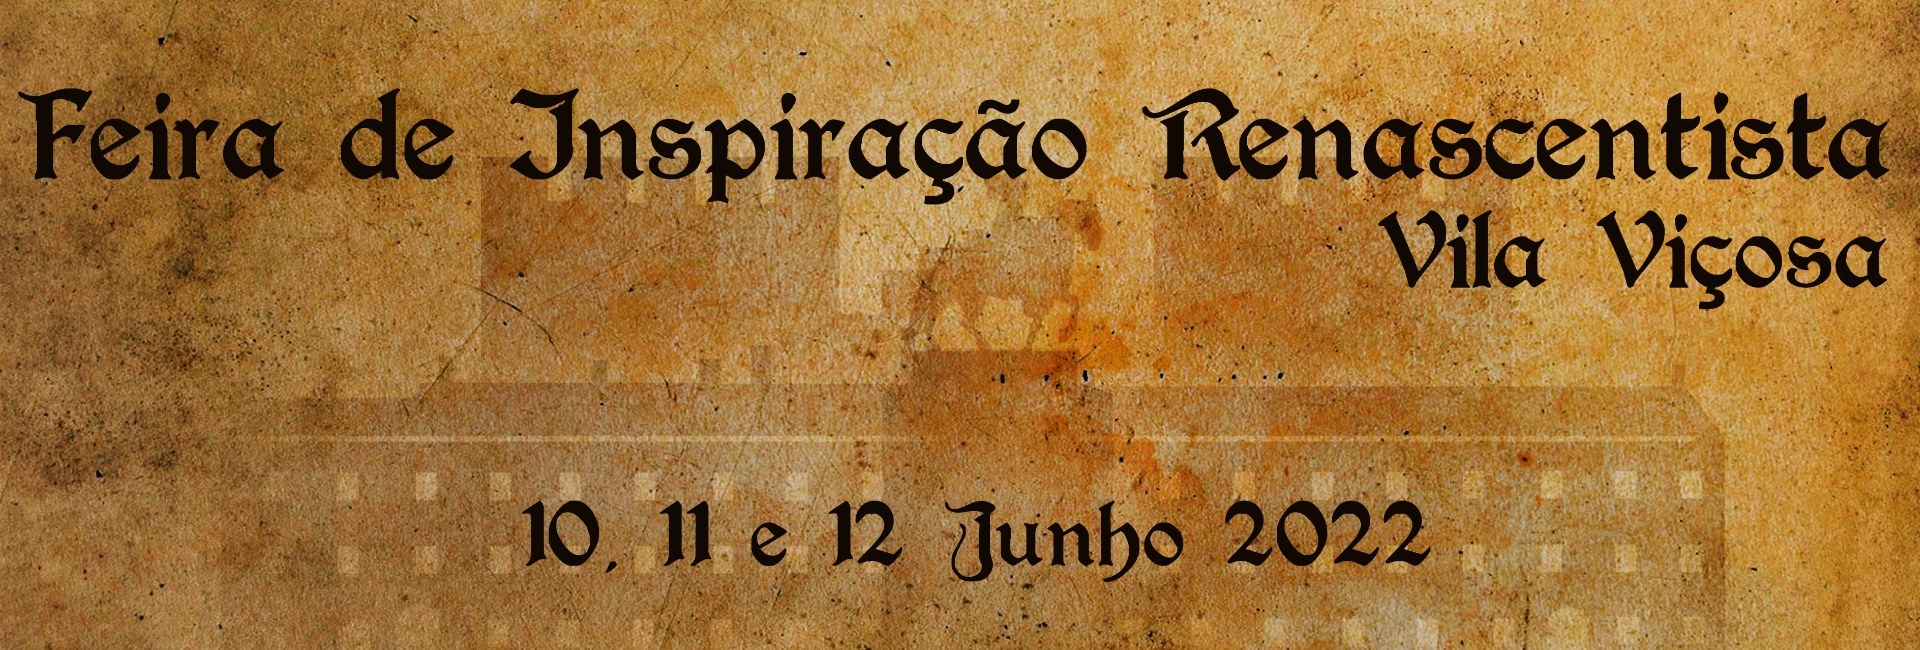 (Português) Feira de Inspiração Renascentista Vila Viçosa – 10, 11 e 12 junho 2022